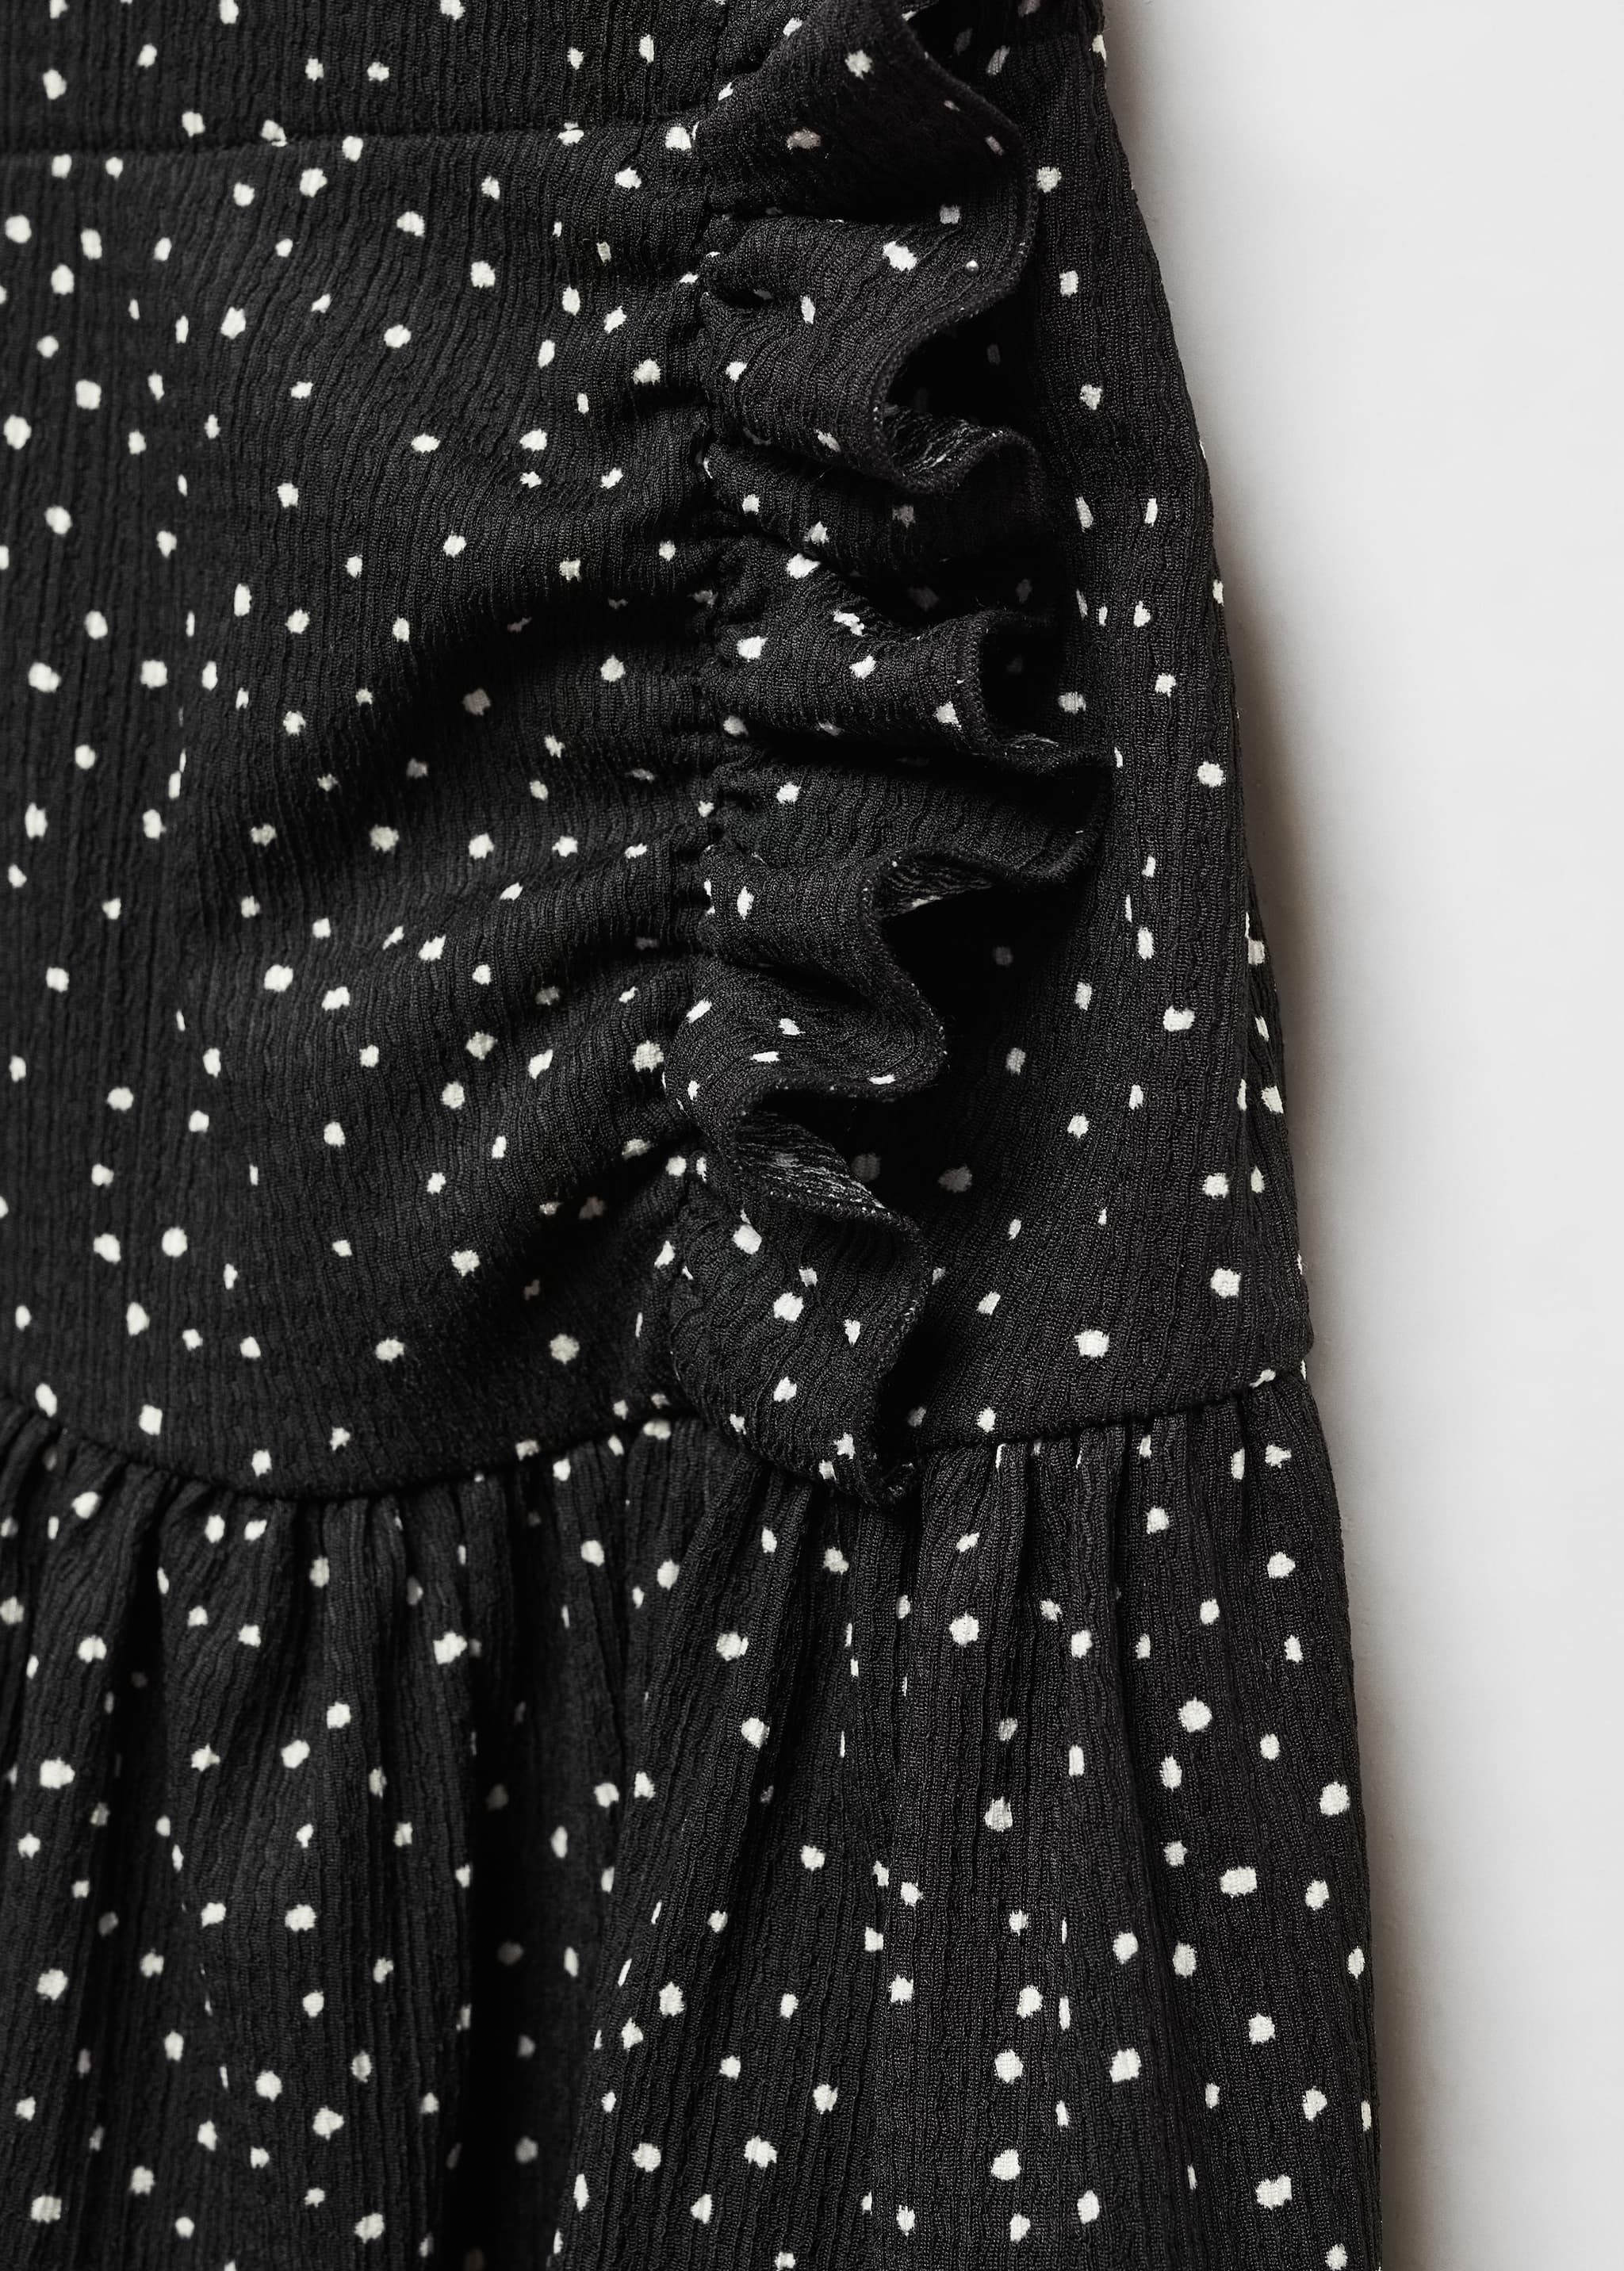 Ruffled polka dot skirt - Details of the article 8